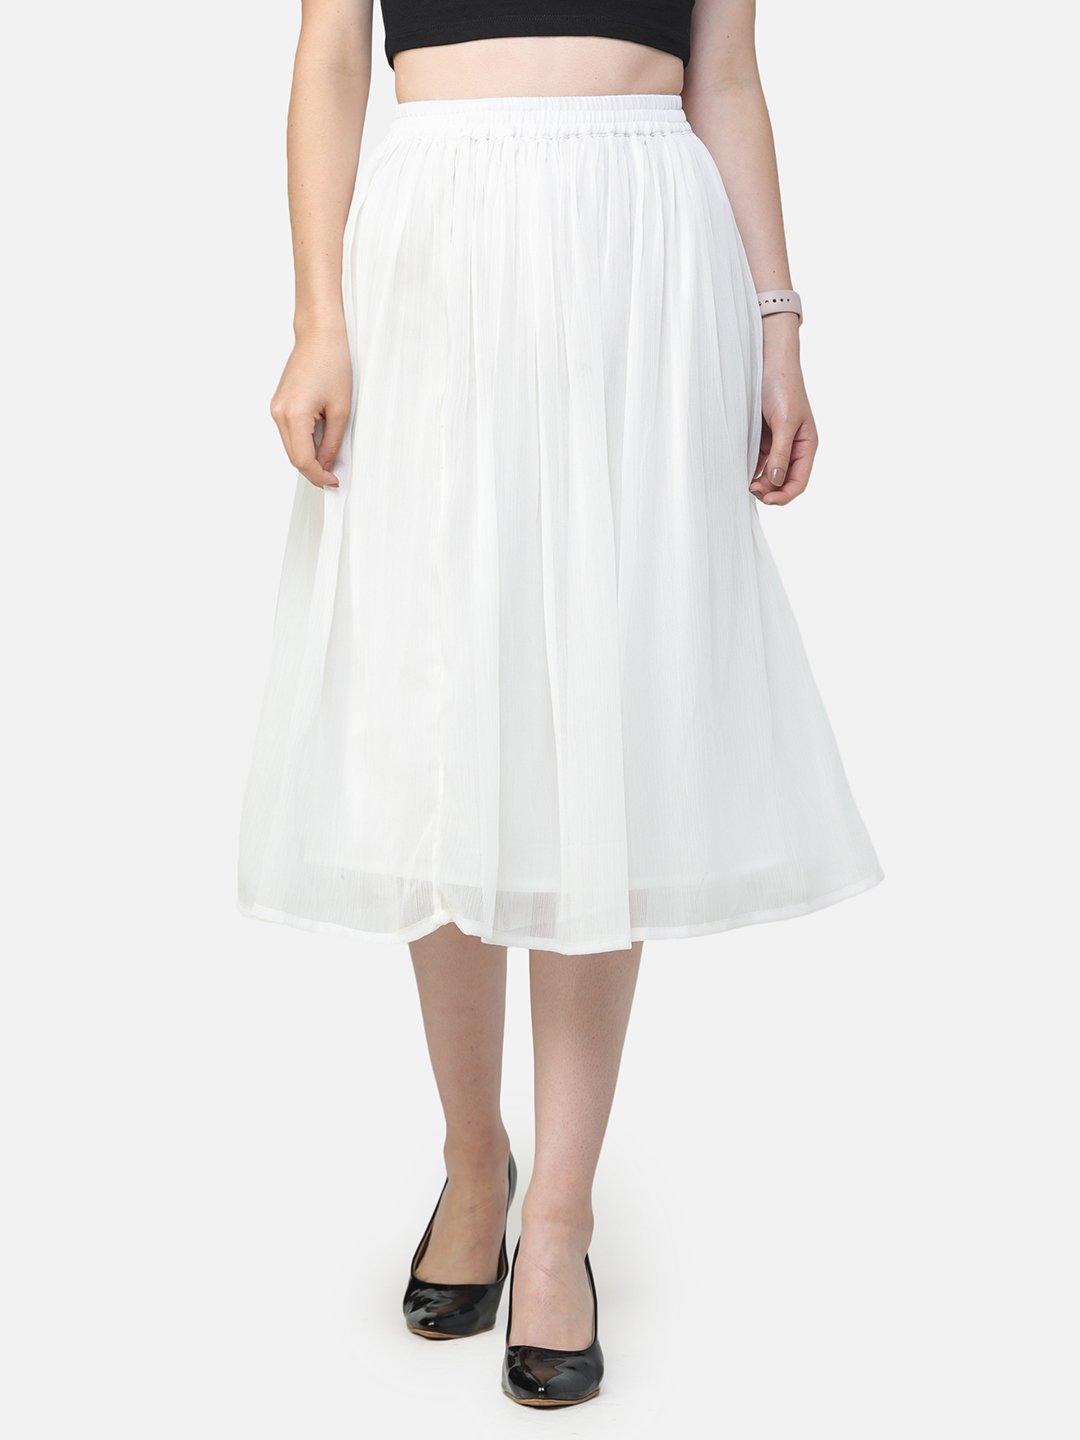 Solid White Skirt